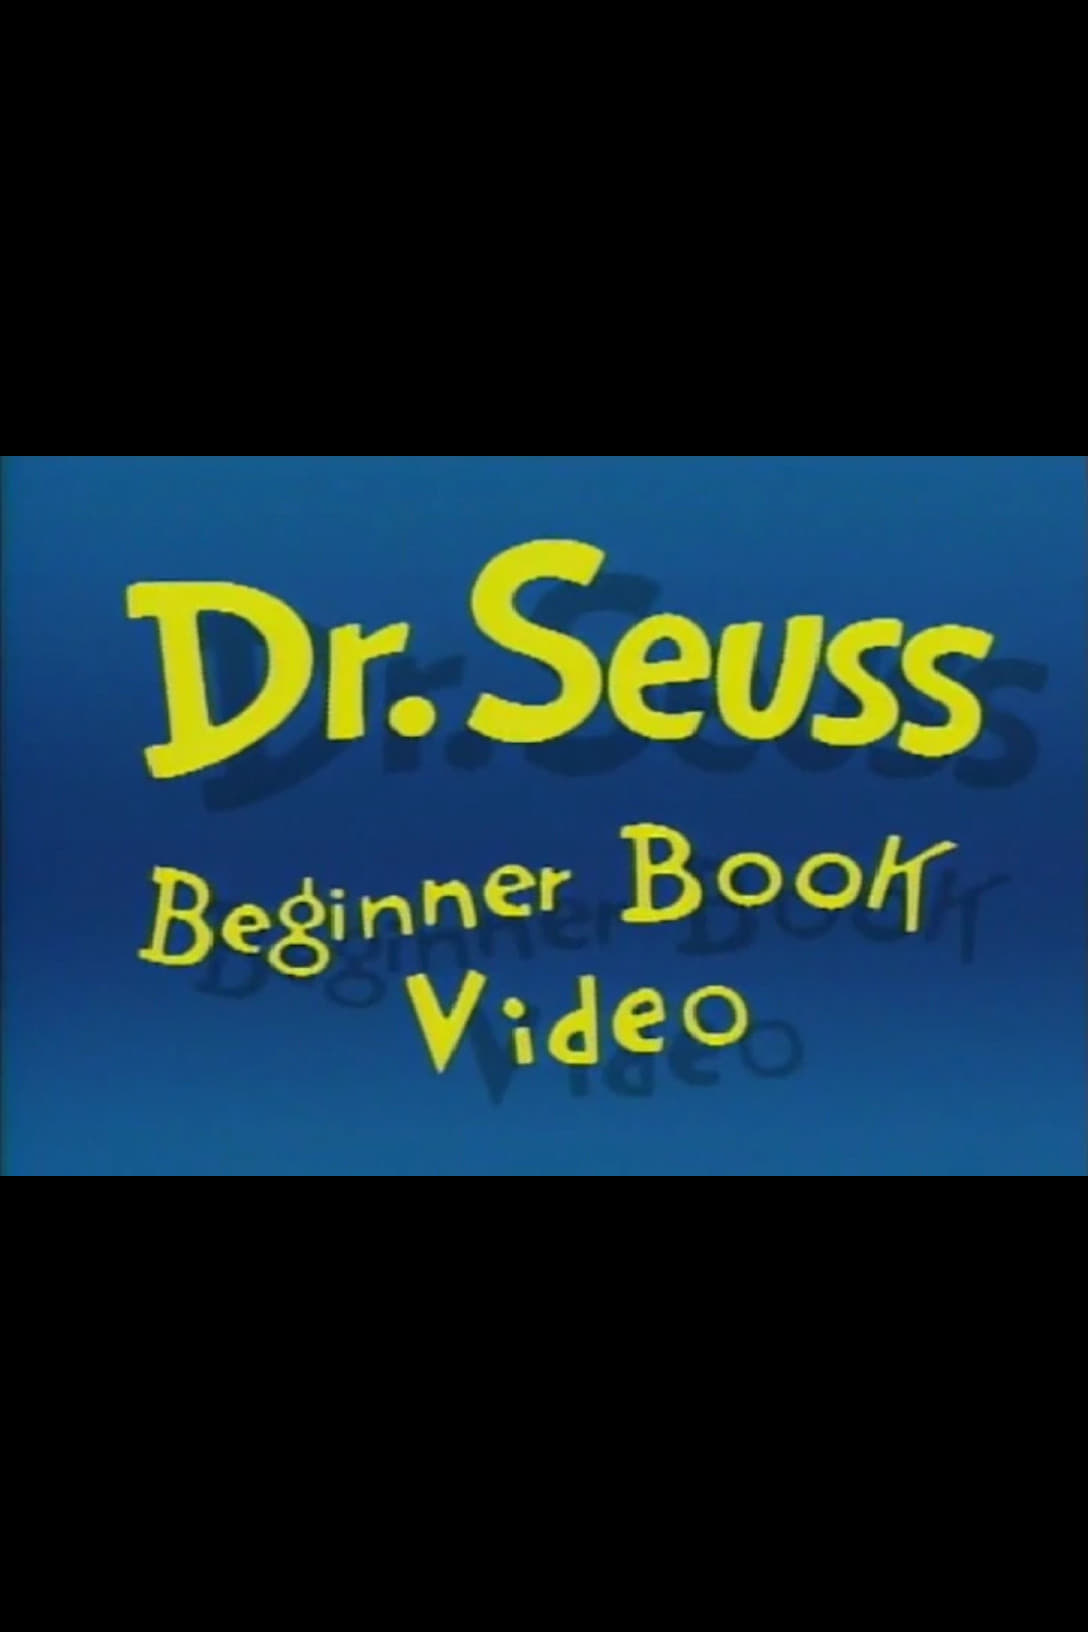 Dr. Seuss Beginner Book Video